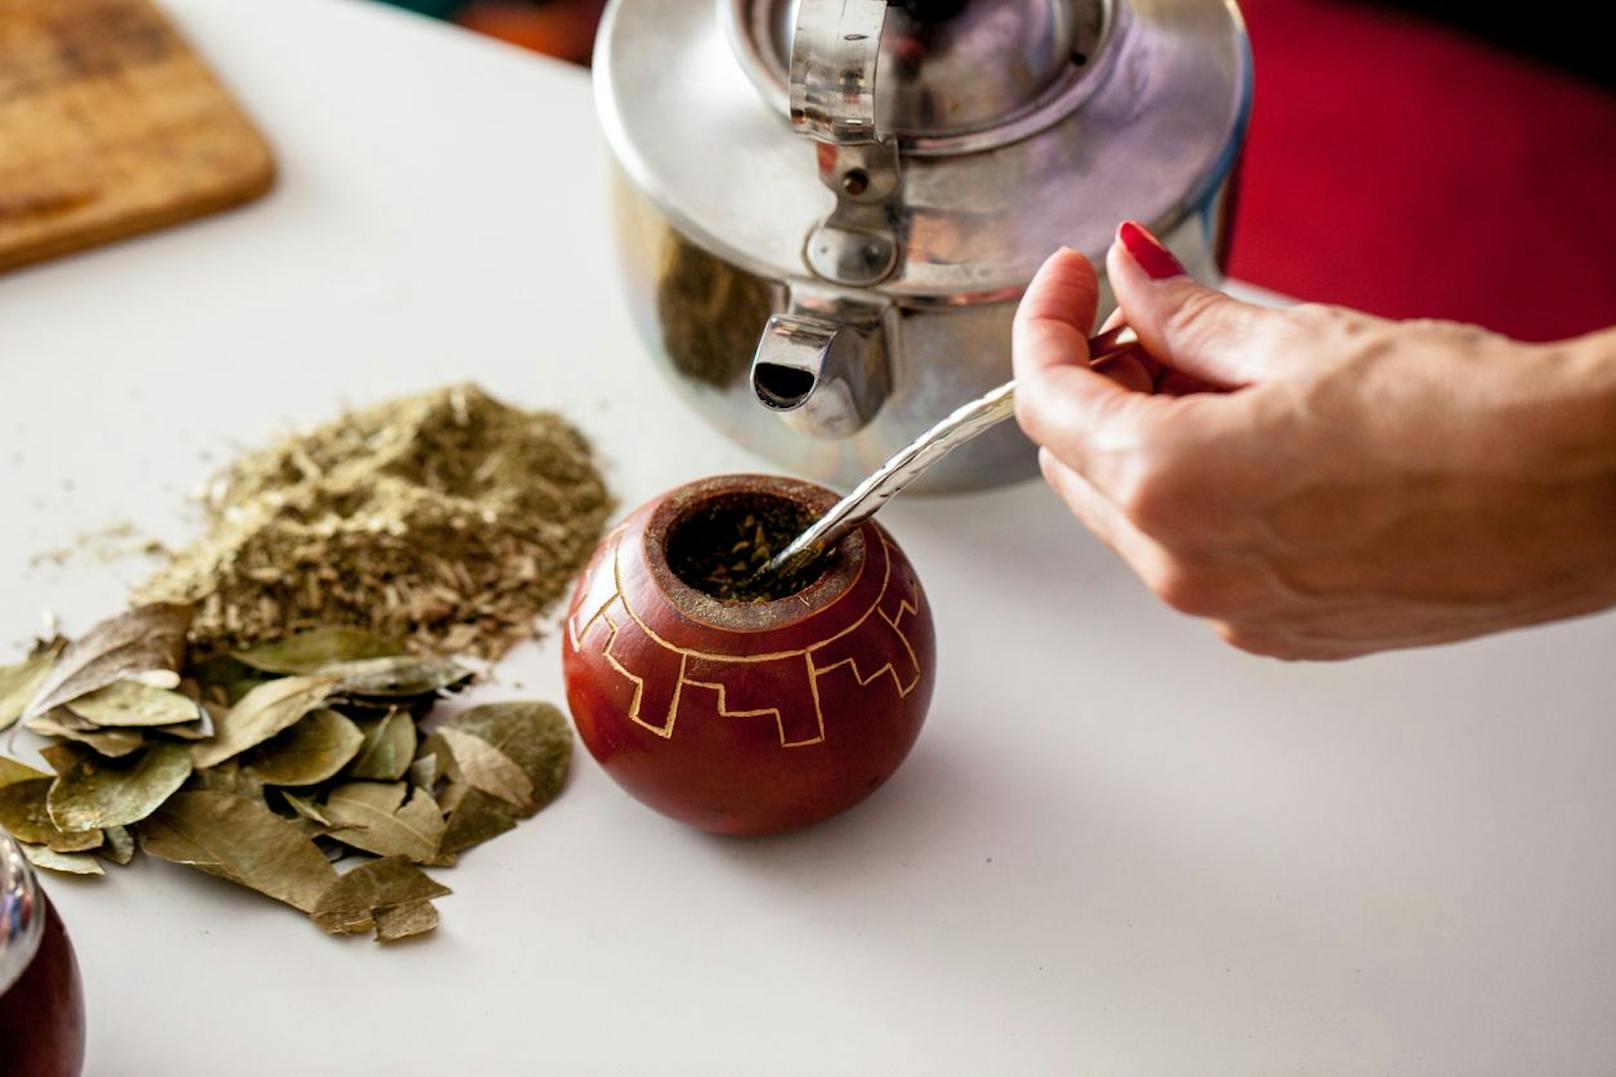 Ein weiterer gesunder Wachmacher wäre der Mate-Tee aus Südamerika. In den gemahlenen und getrockneten Blättern befinden sich Gerbstoffe, die deinen Körper langsam, aber kontinuierlich, mit Koffein versorgen.